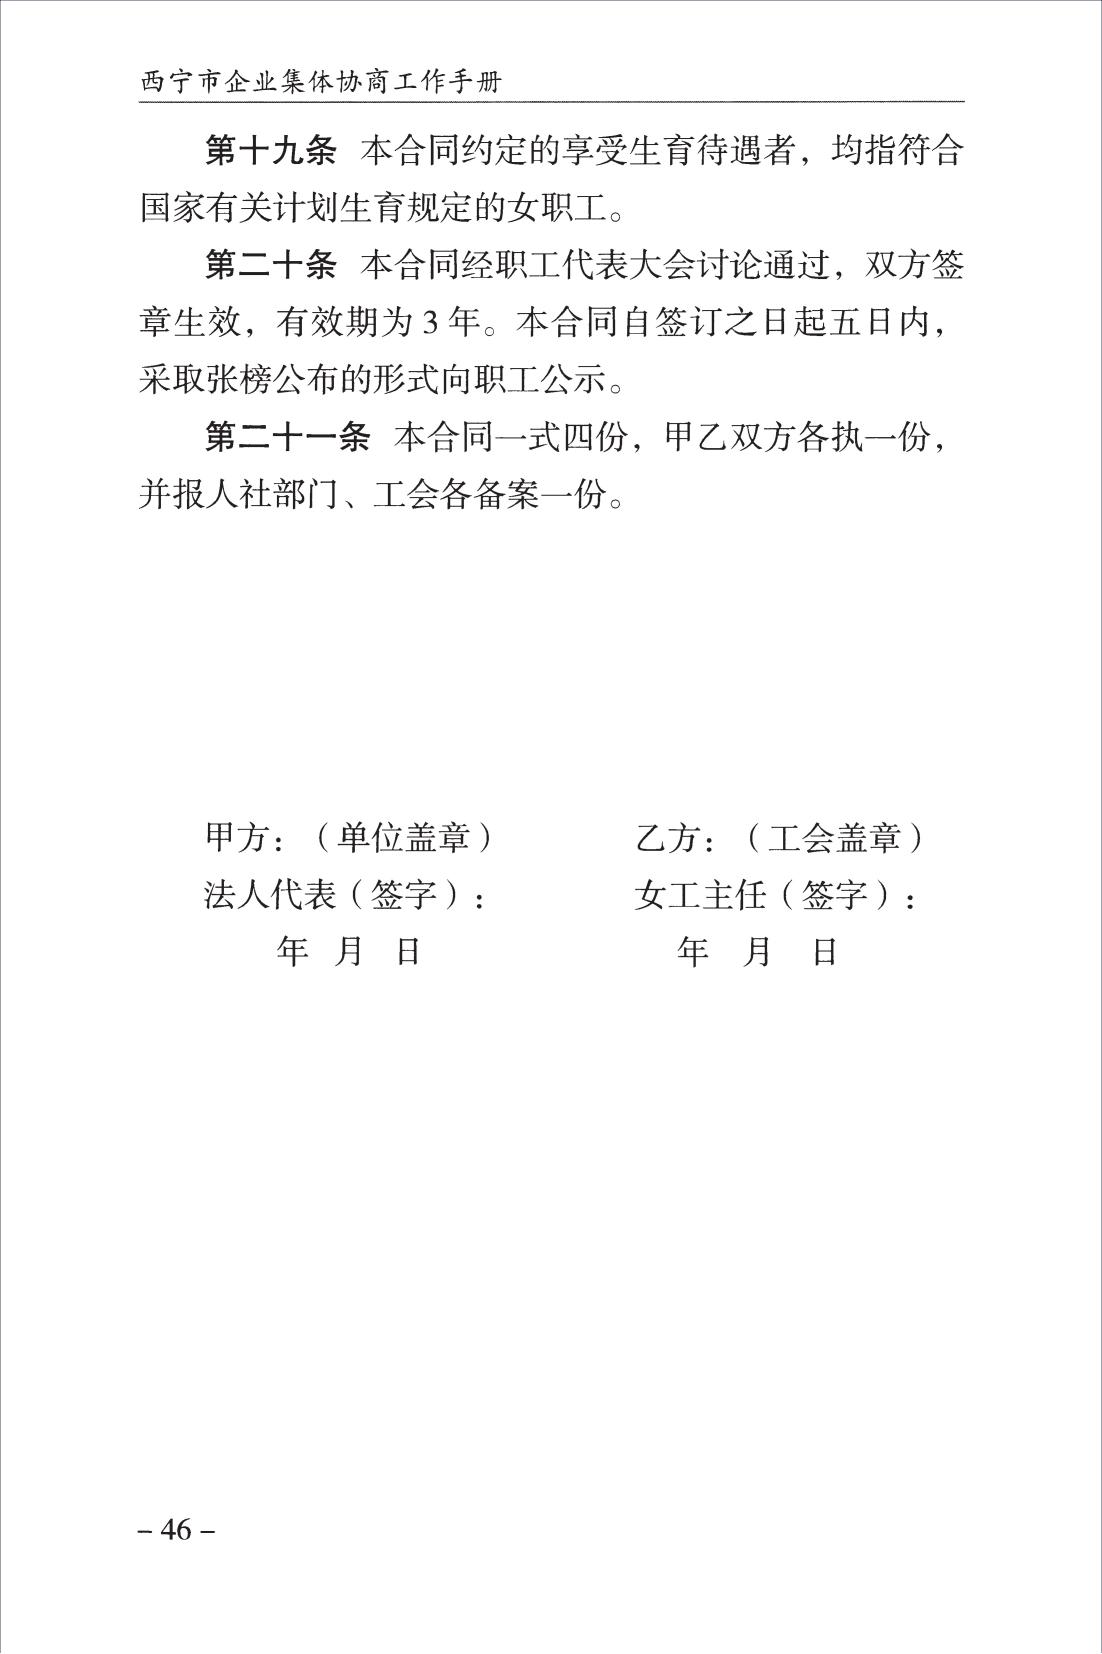 西宁市企业集体协商工作手册_48.jpg